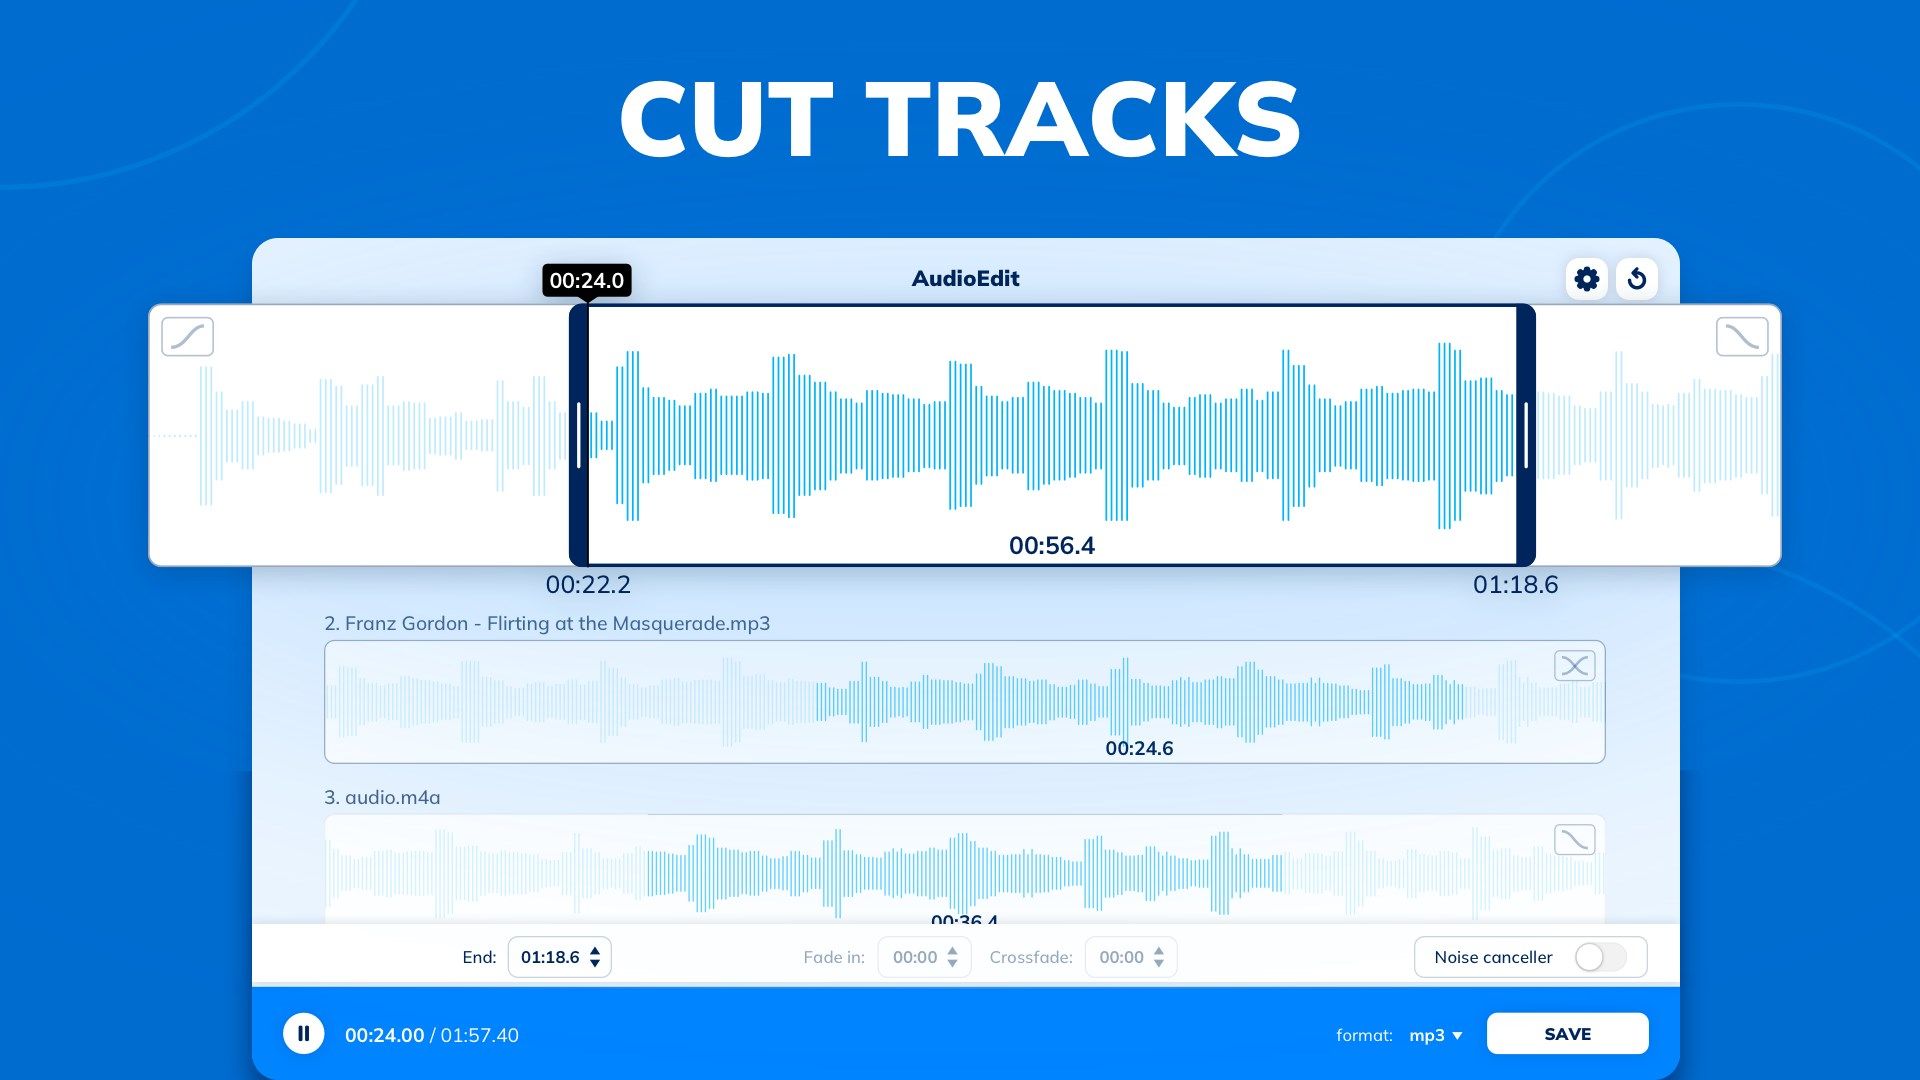 AUDIOEDIT: Audio Editing Tool